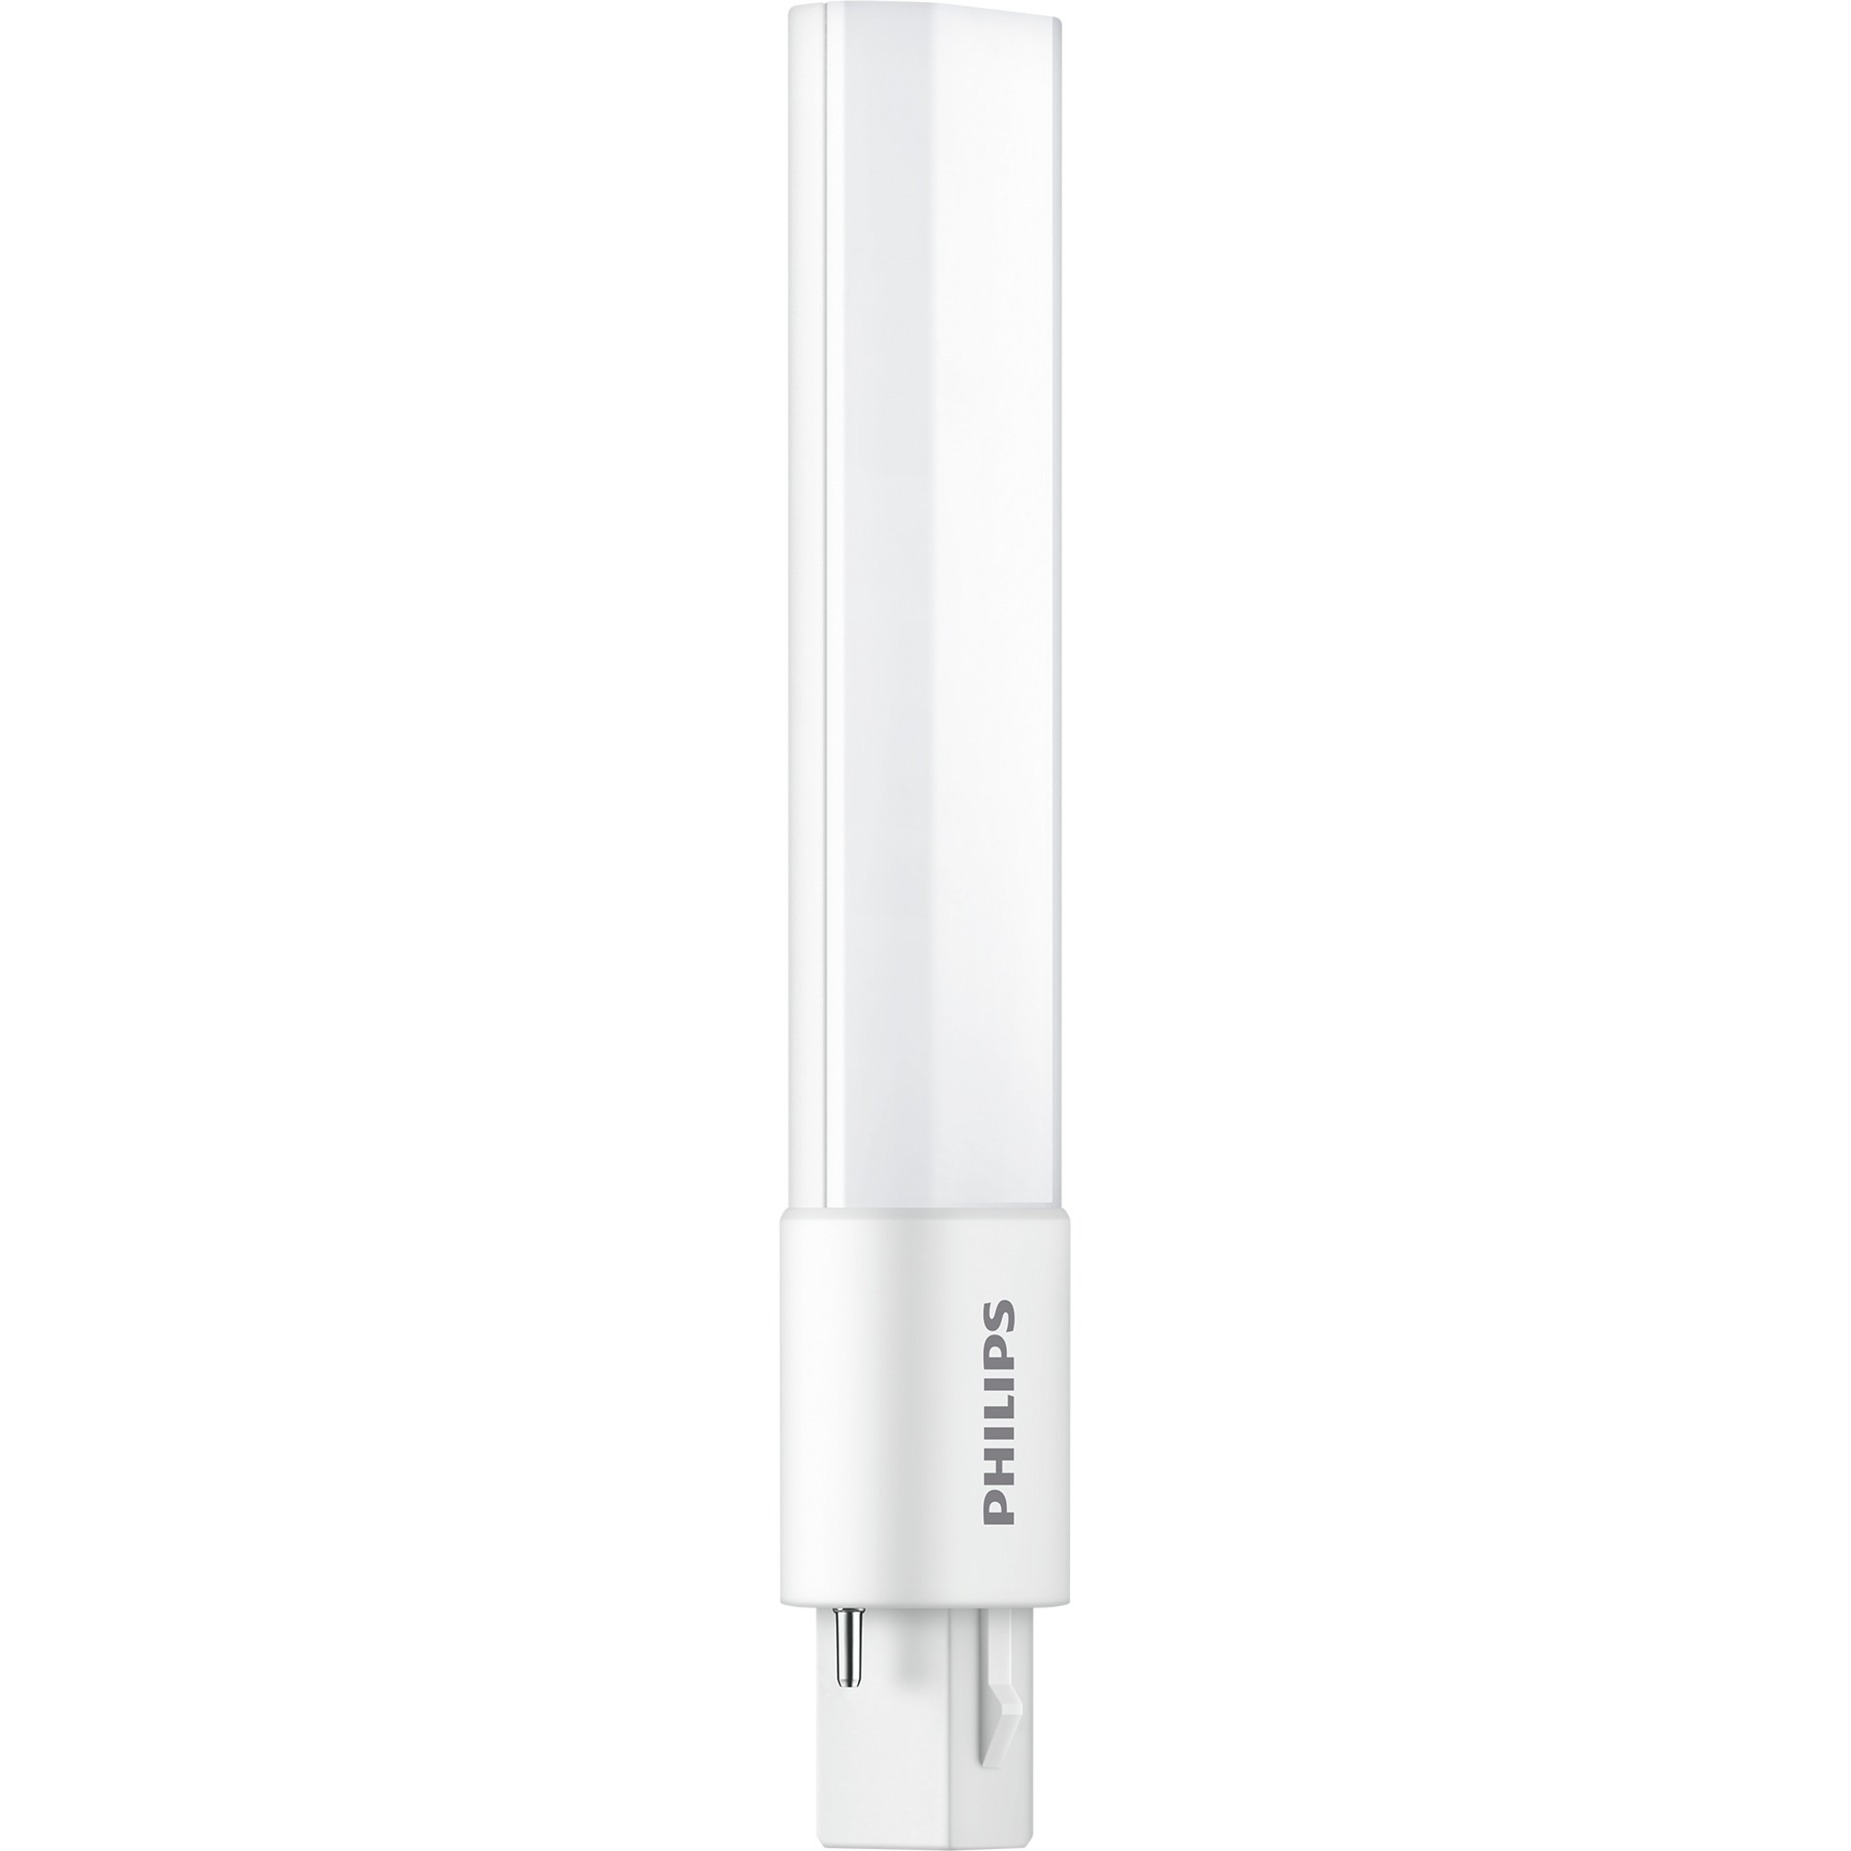 Image of Alternate - CorePro LED PLS 5W 830 2P G23, LED-Lampe online einkaufen bei Alternate